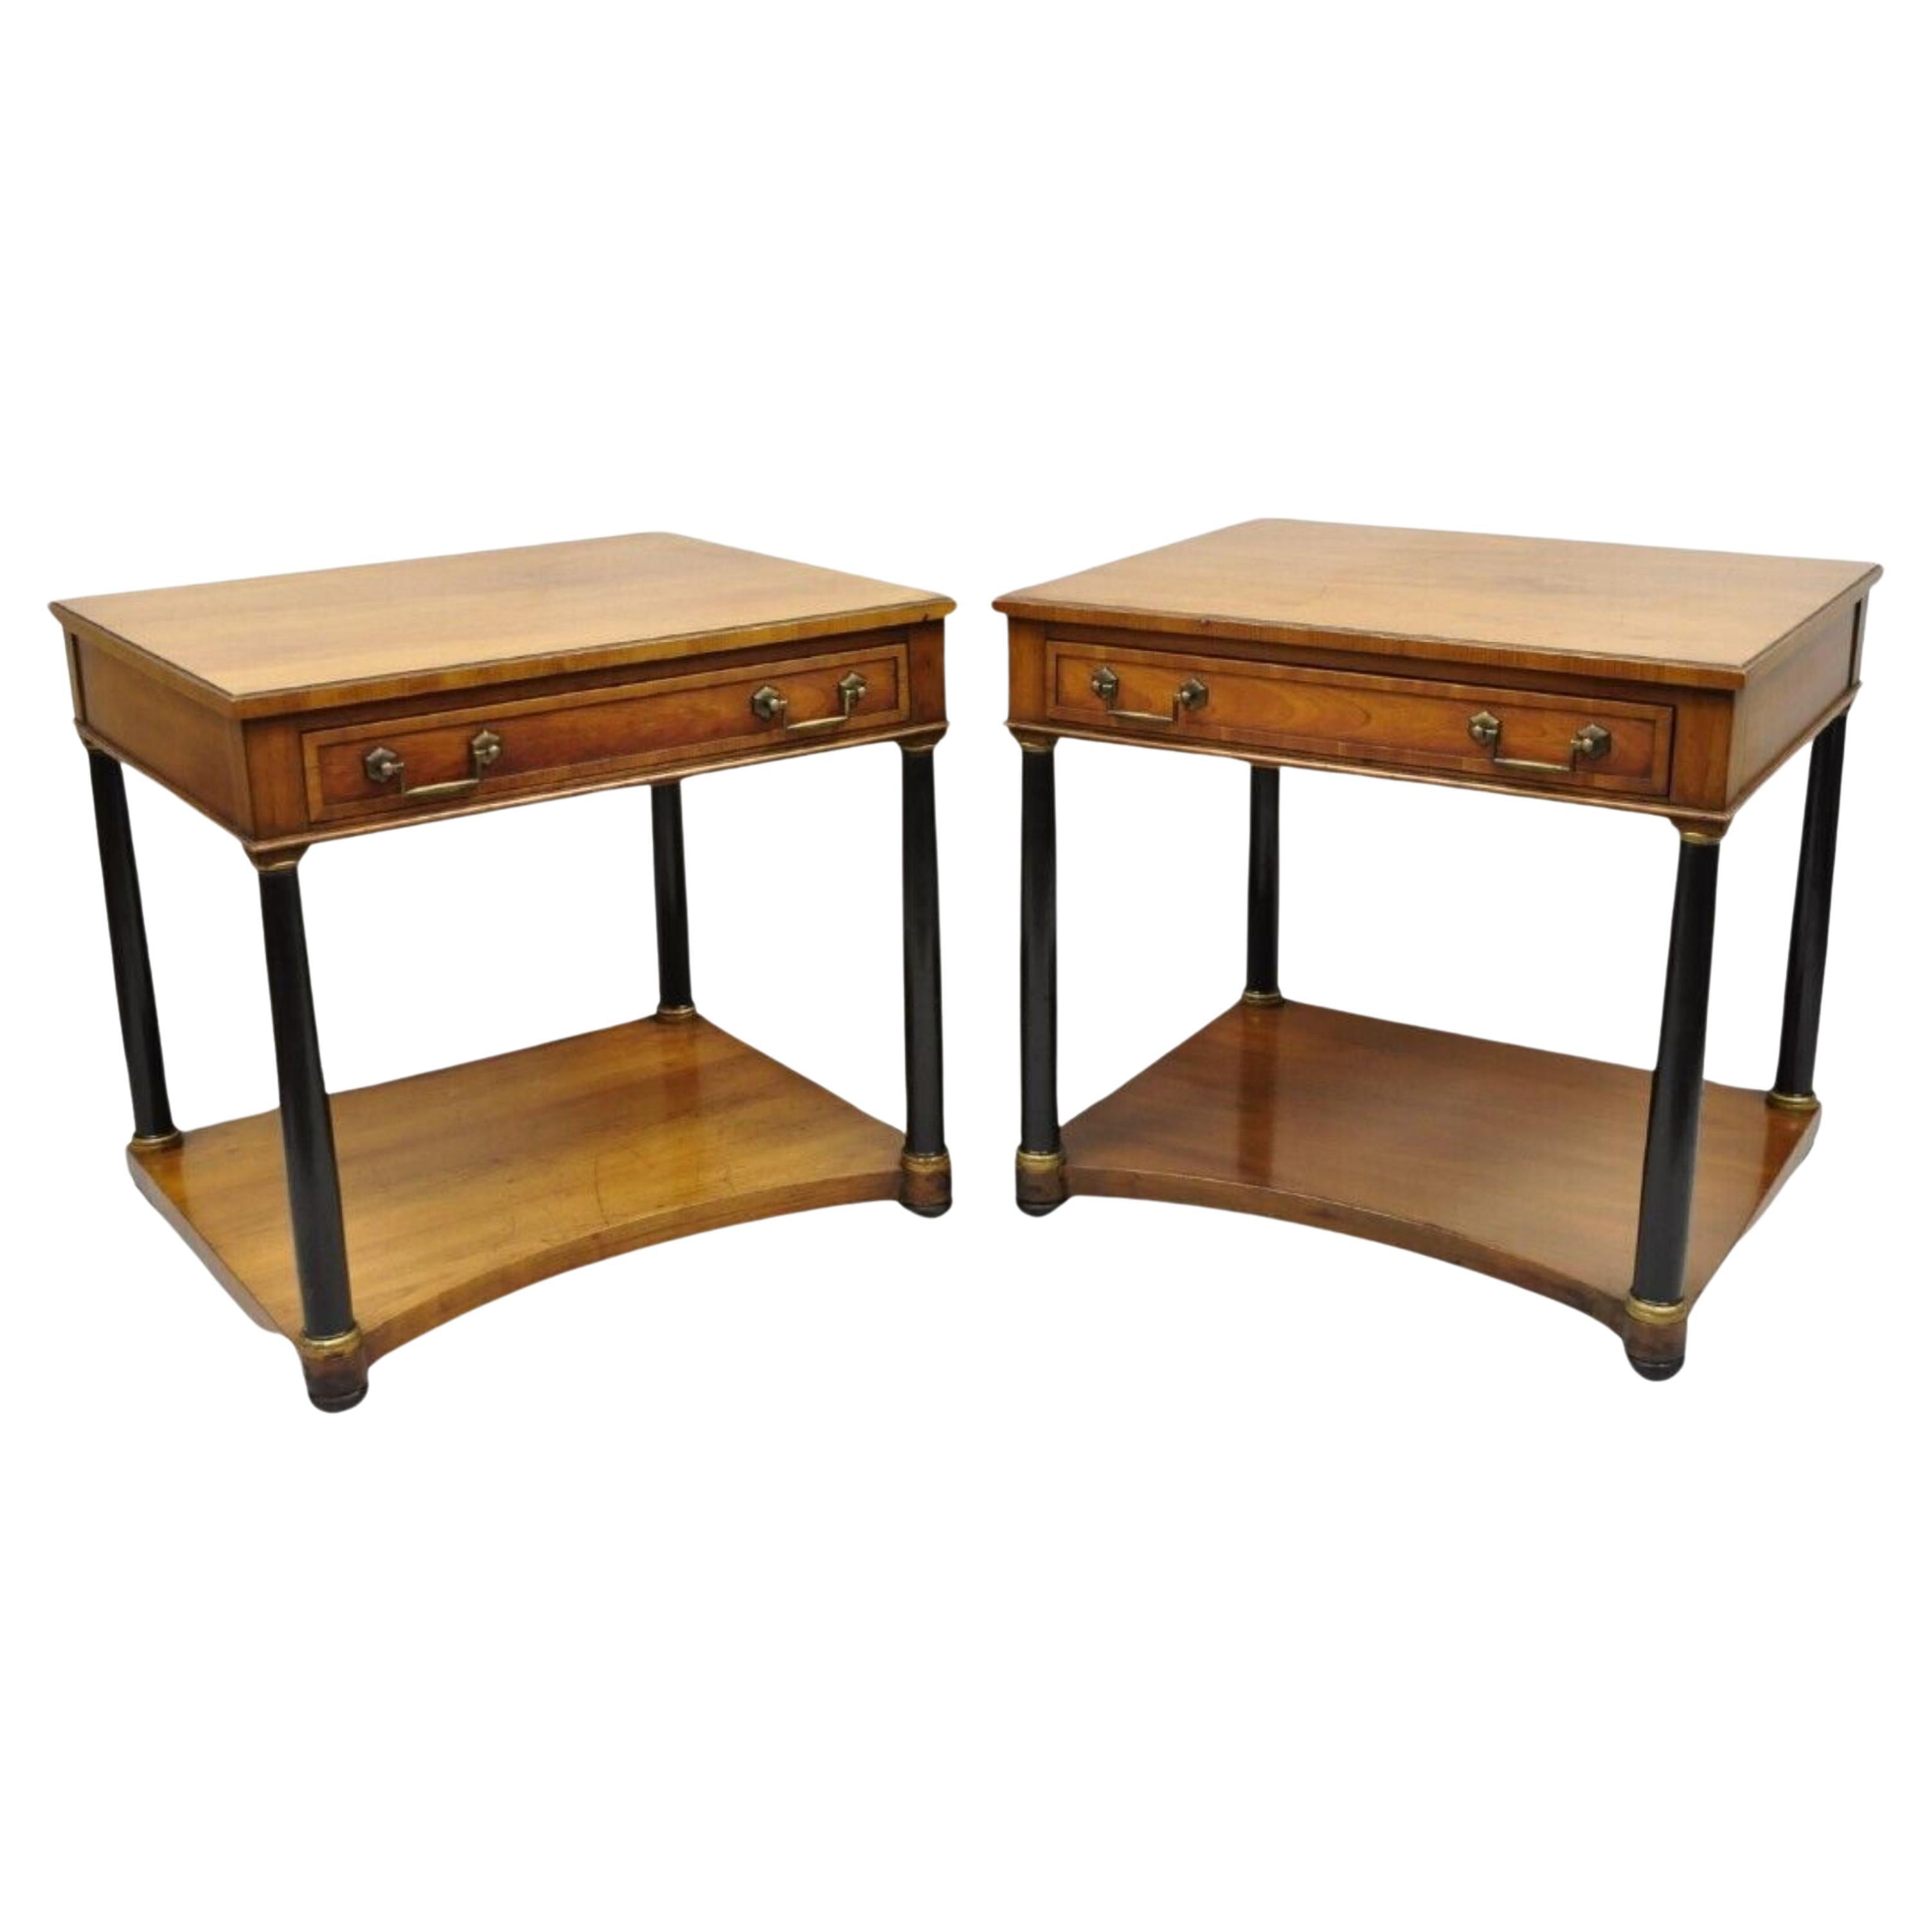 Jahrhundert Französisch Empire-Stil Kirsche Holz Schwarz Spalte 1 Schublade End Tische - Paar